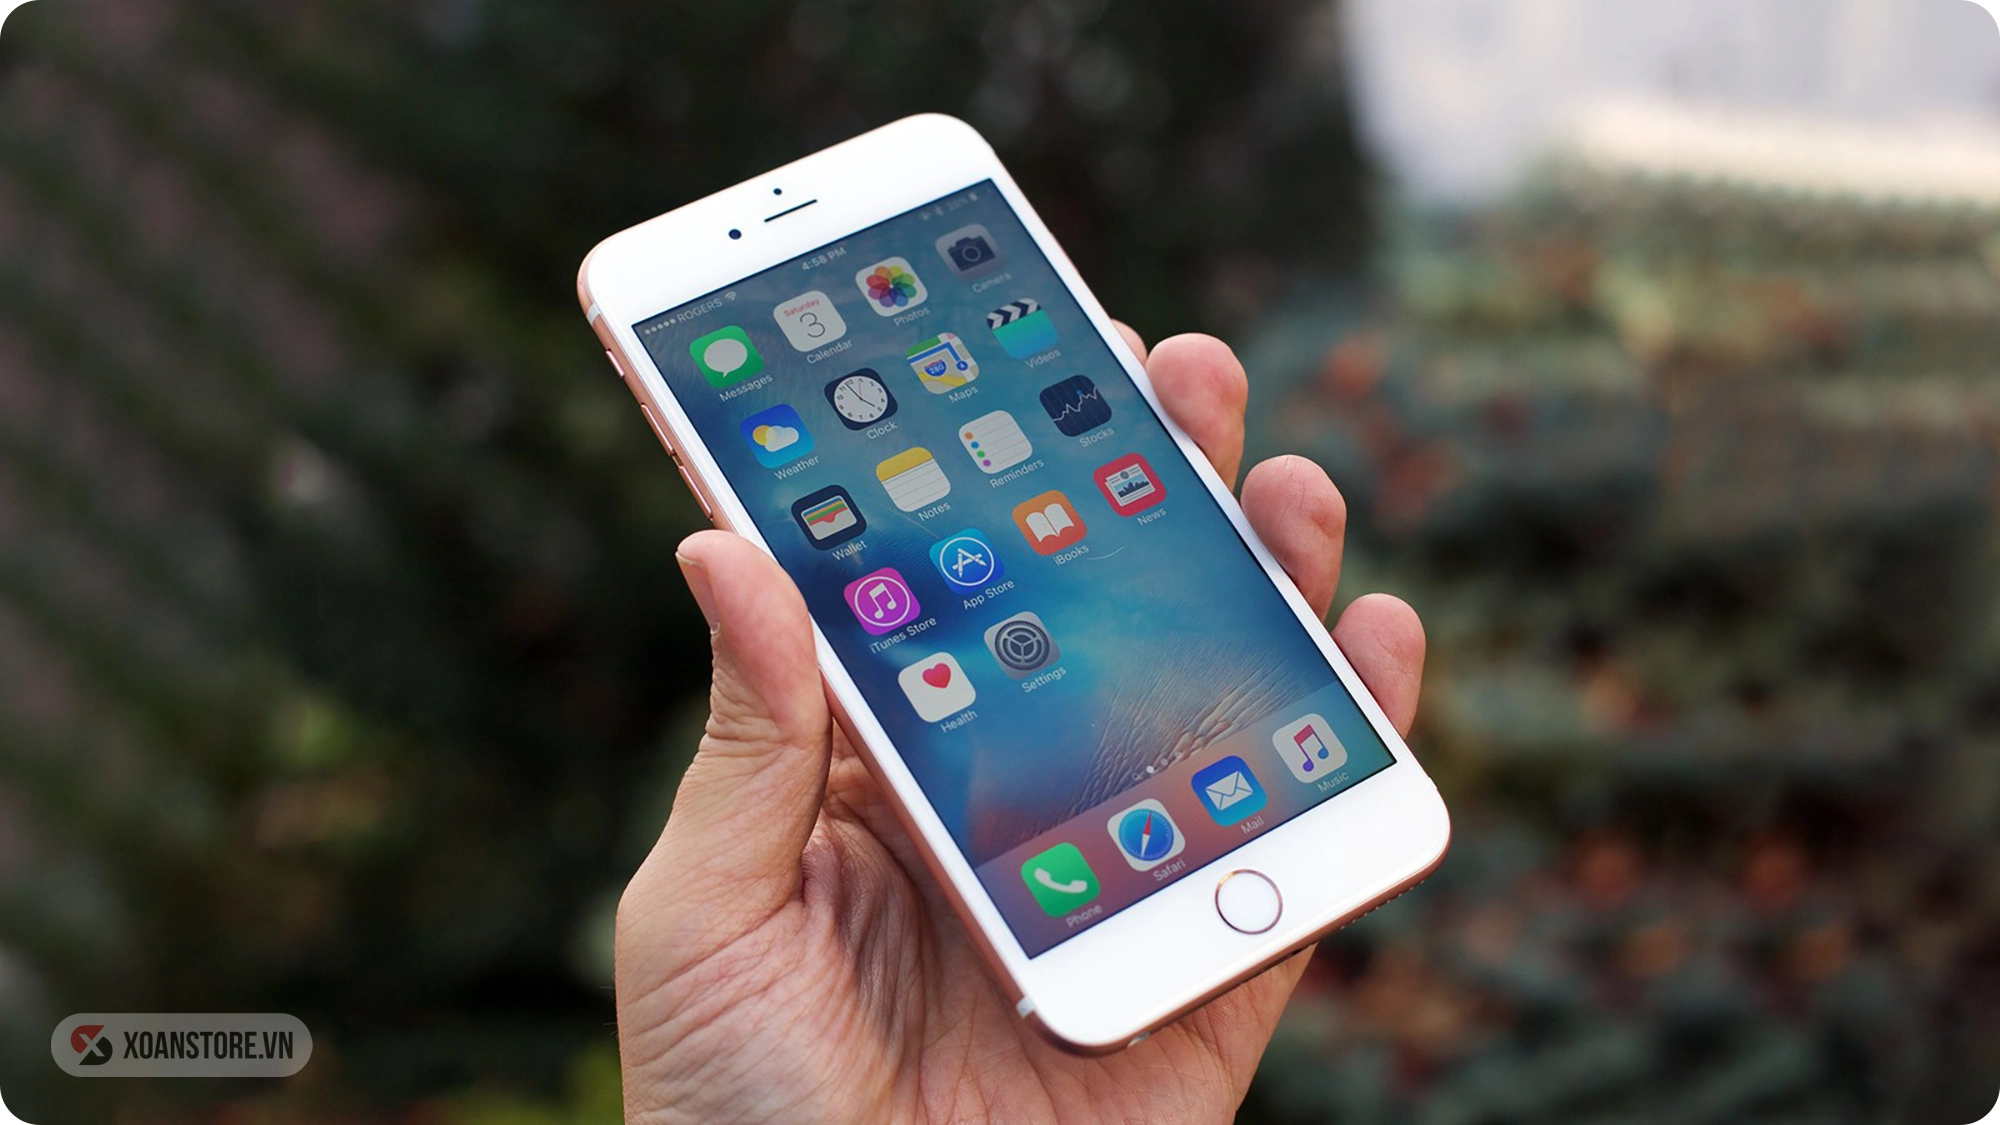 iPhone 6s 32GB cũ giá rẻ, trả góp 0%, bảo hành 12 Tháng | Xoanstore.vn